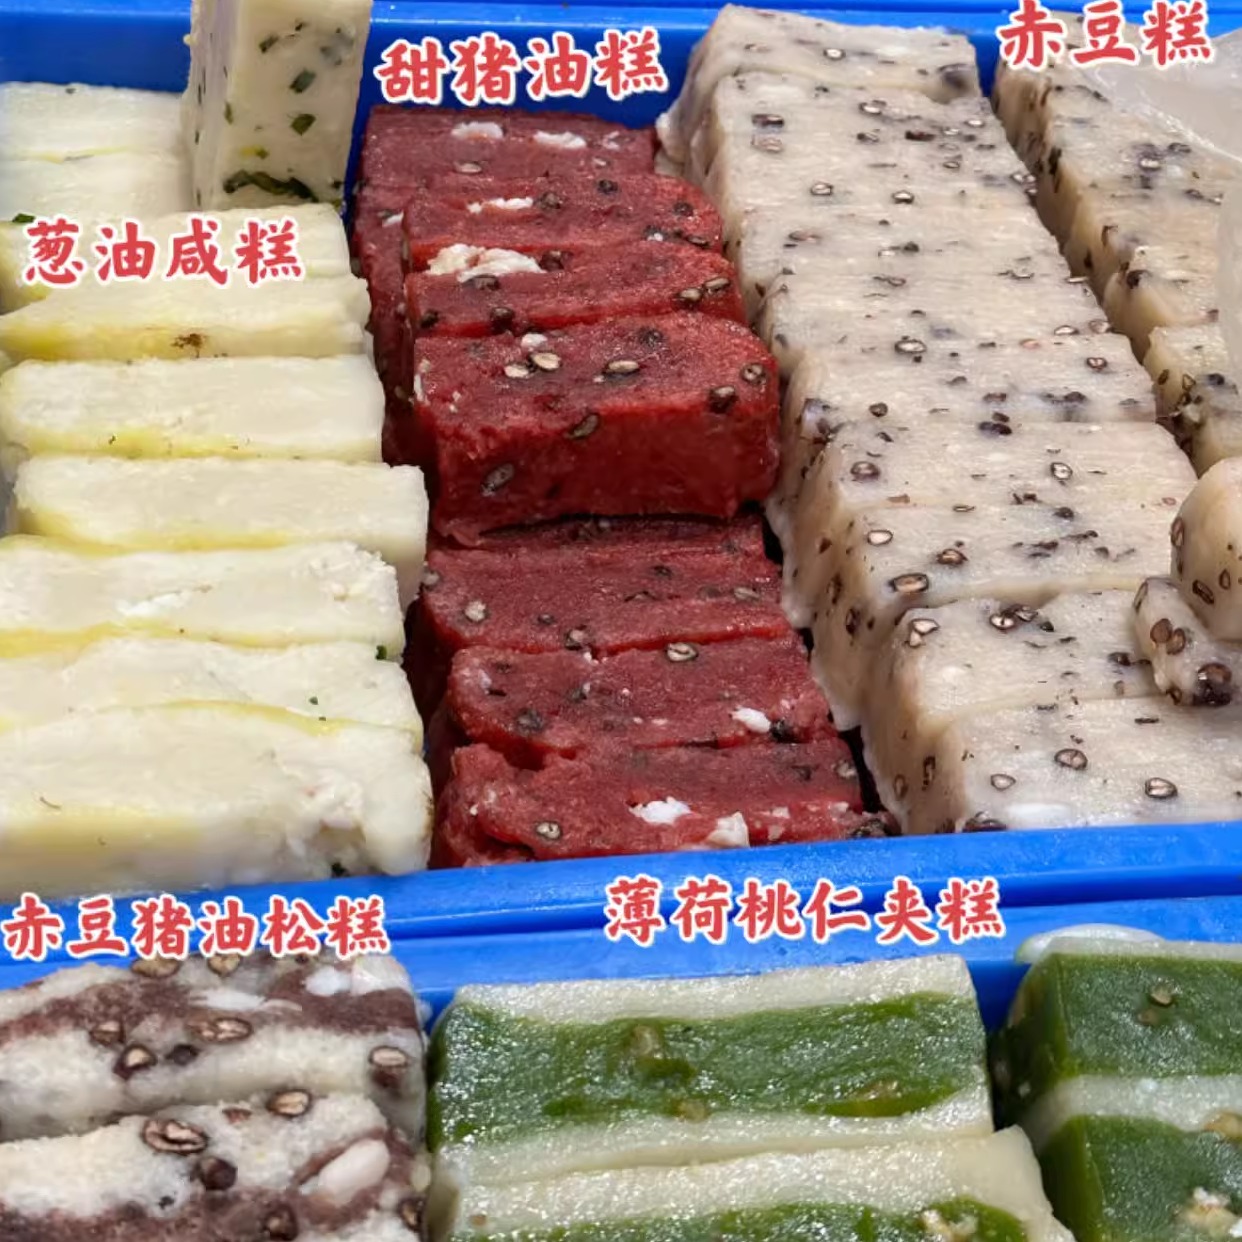 苏州百年老店黄天源糕团苏式点心传统美食手工制作糕点组合装礼盒